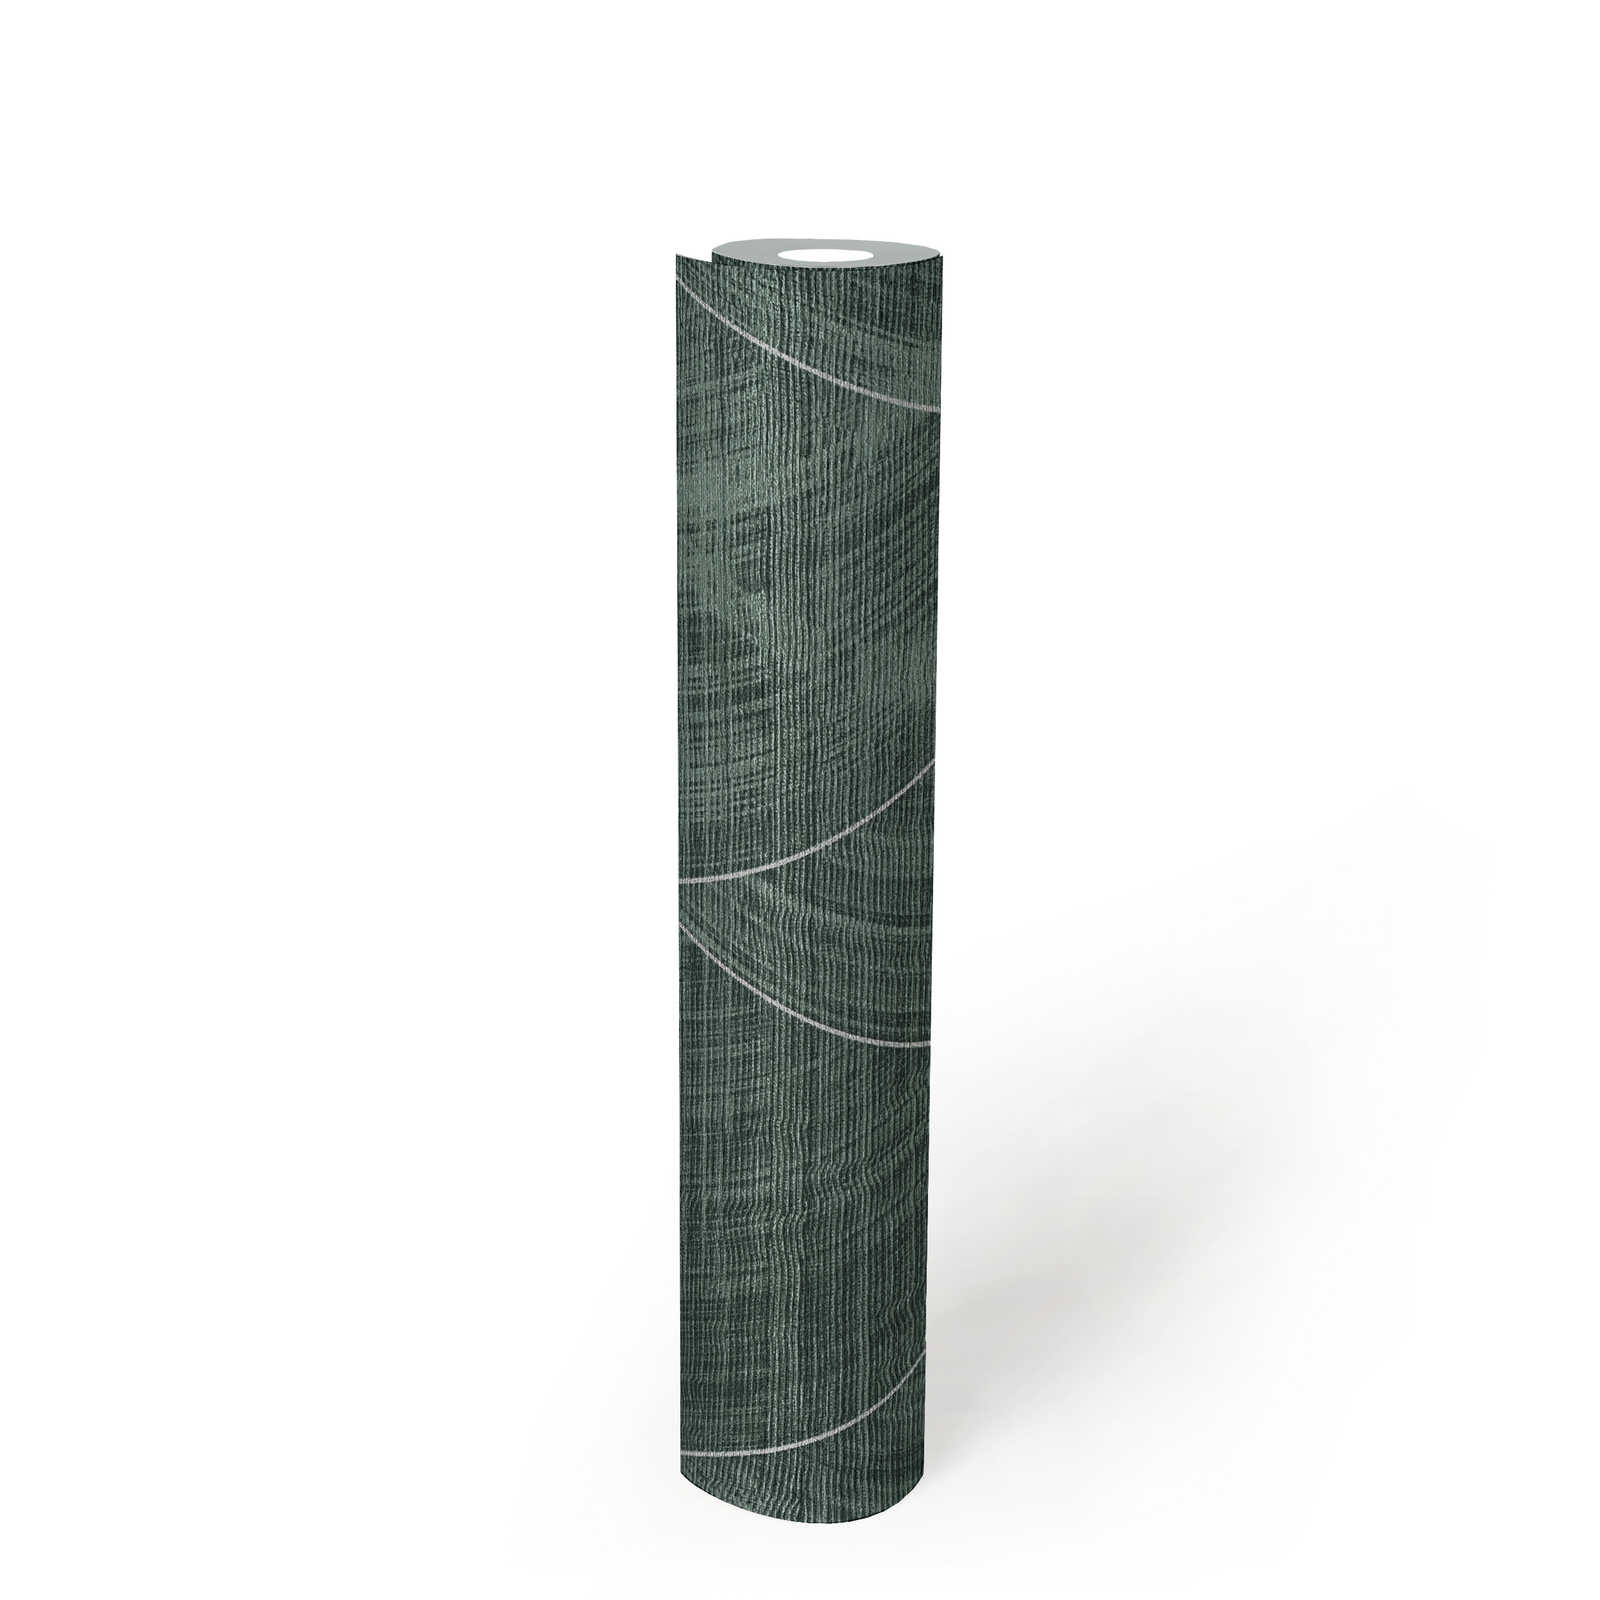             Diamantbehang met gevlekte textiellook - metallic, groen
        